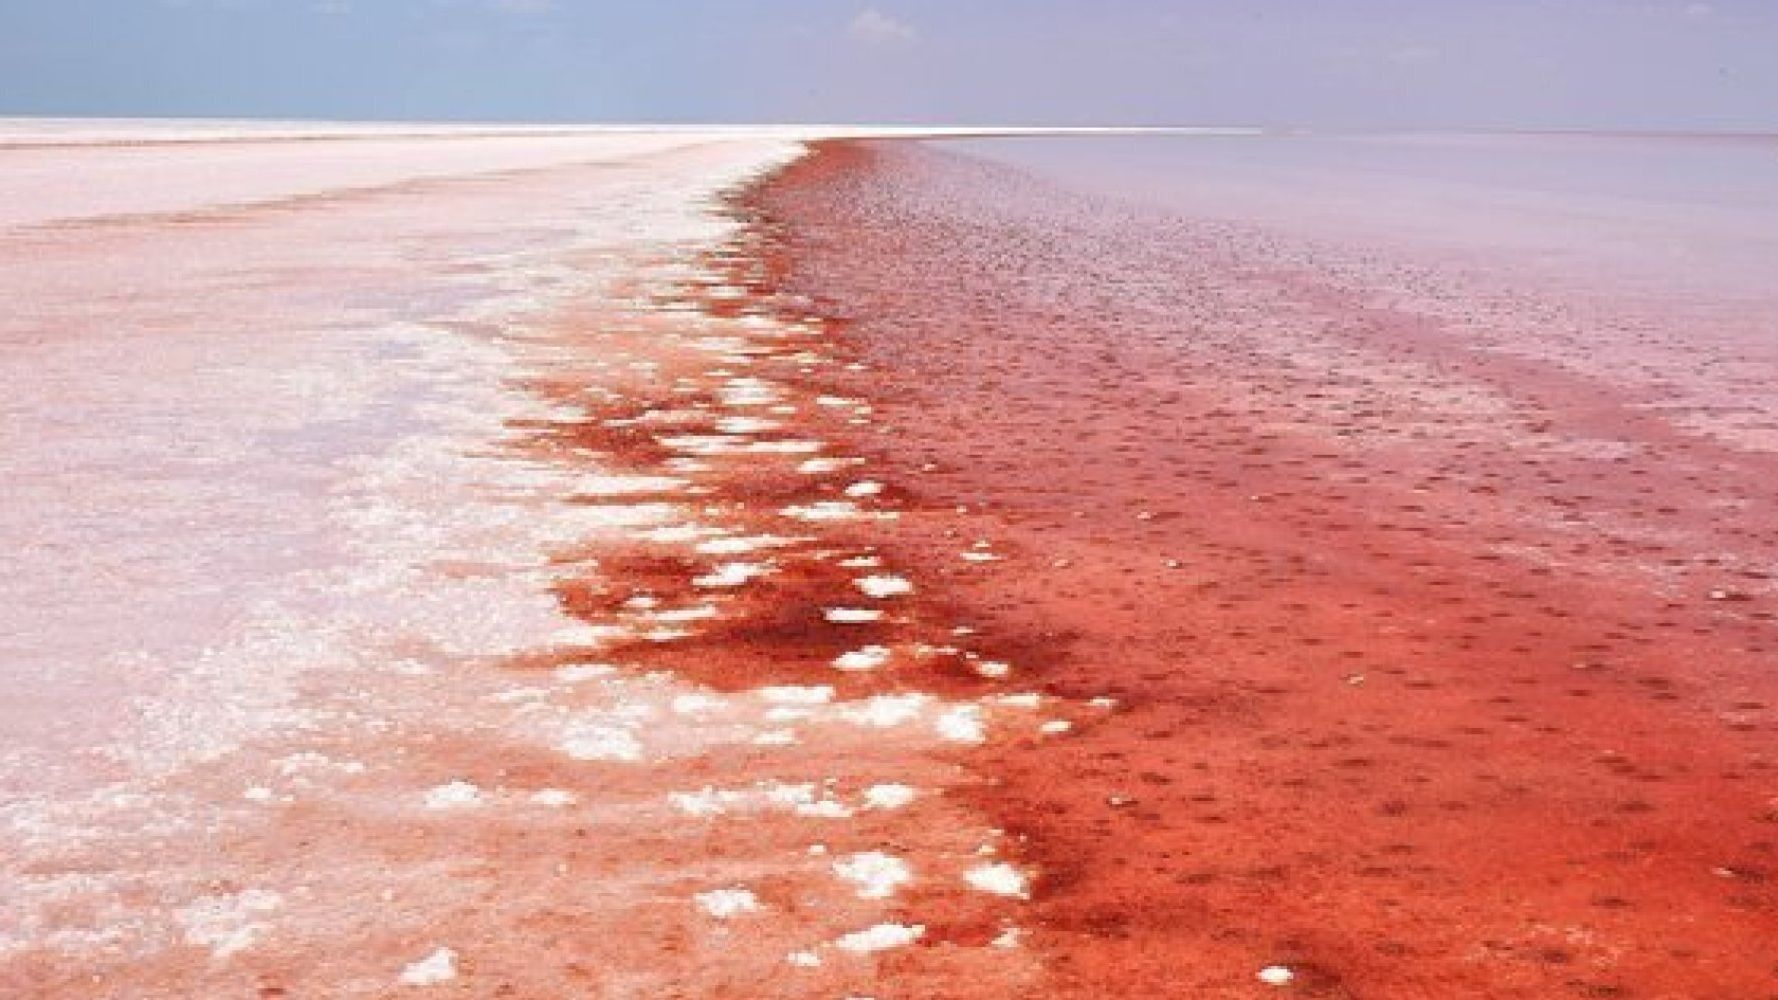 Μην πανικοβάλλεστε, είναι απλά μια κόκκινη λίμνη | HuffPost Greece